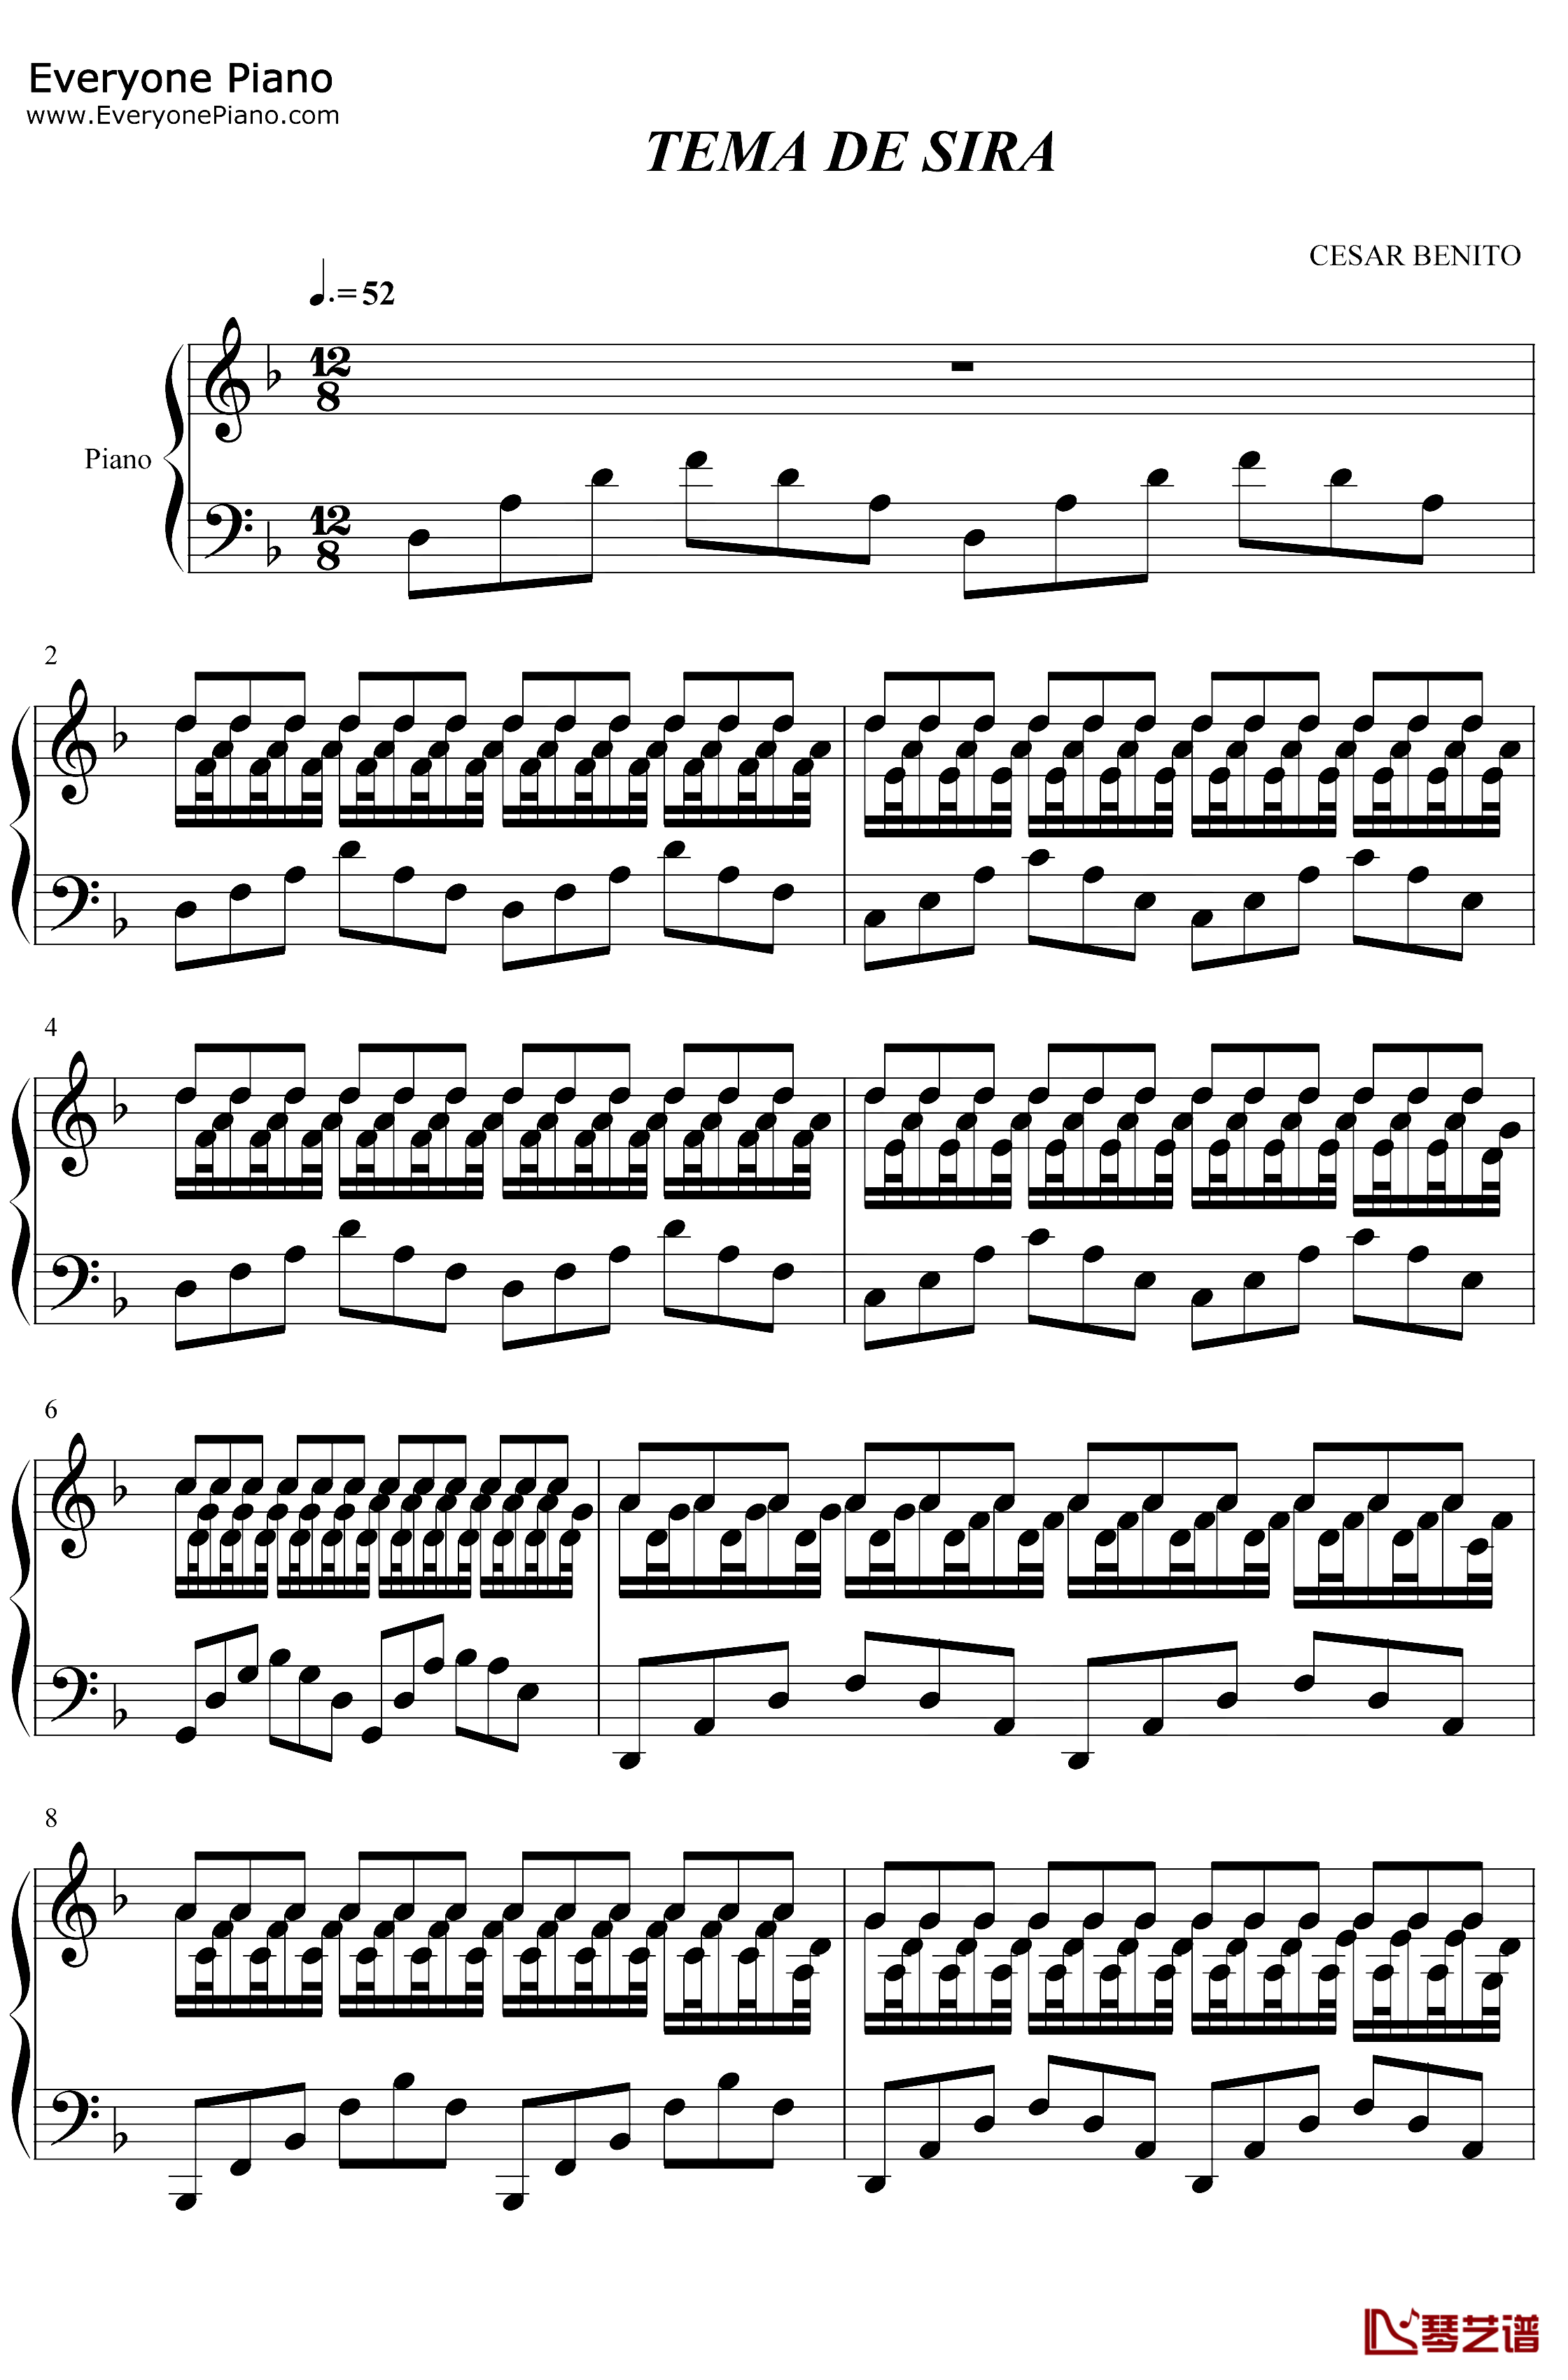 Tema de Sira钢琴谱-CesarBenito-CesarBenito-时间的针脚1